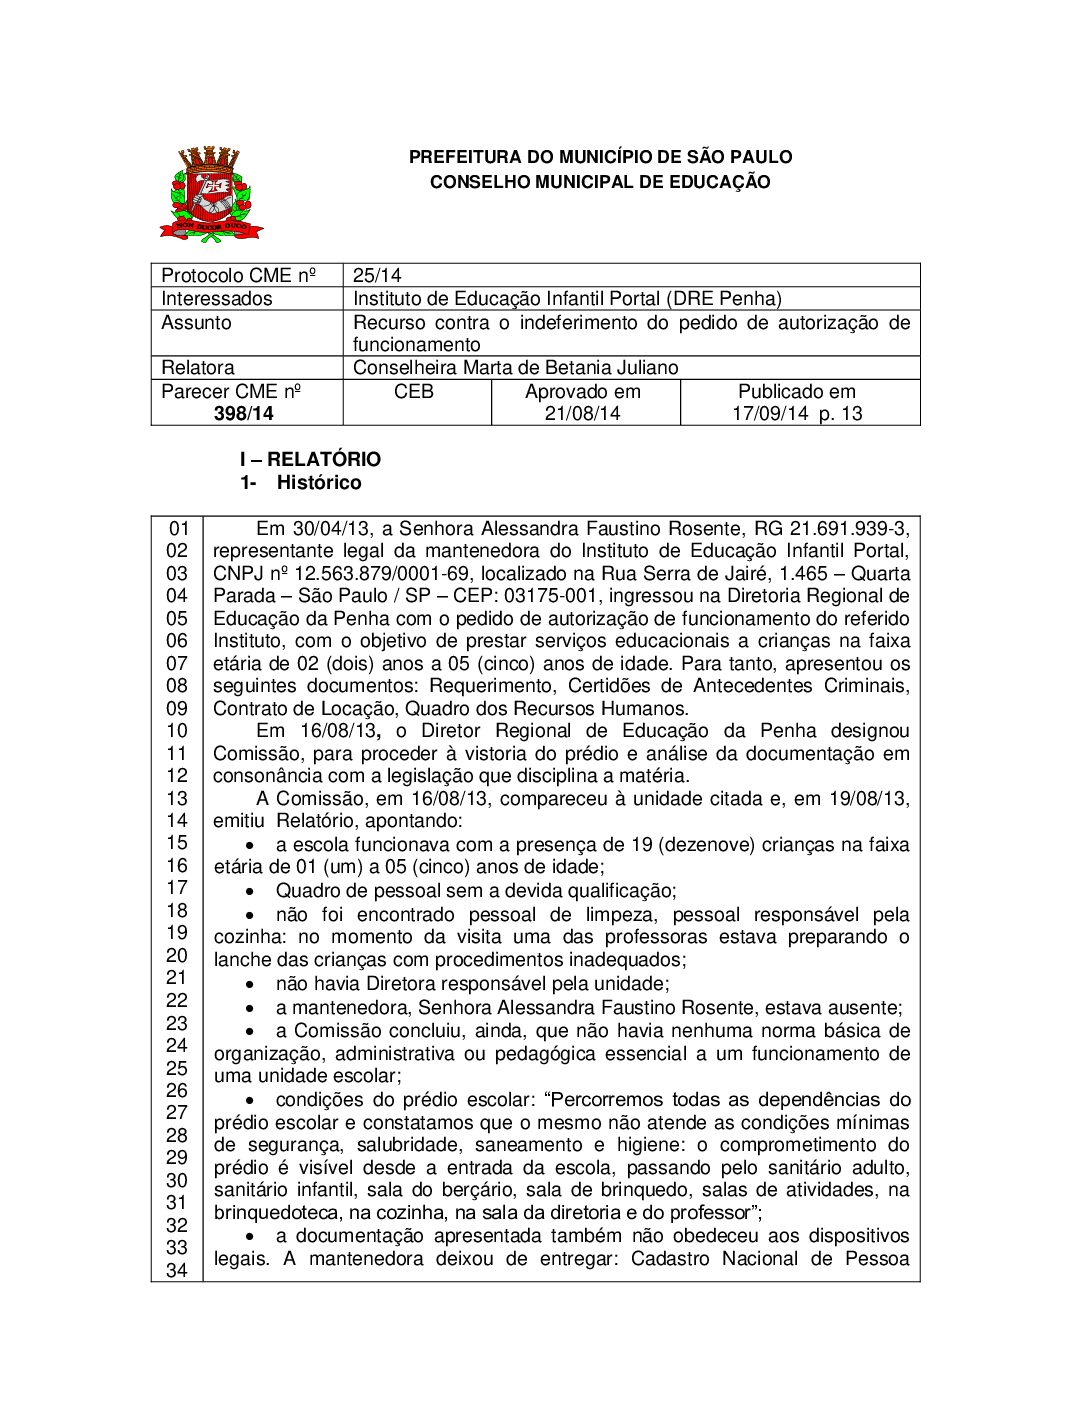 Parecer CME nº 398/2014 - Instituto de Educação Infantil Portal (DRE Penha) - Recurso contra o indeferimento do pedido de autorização de funcionamento 